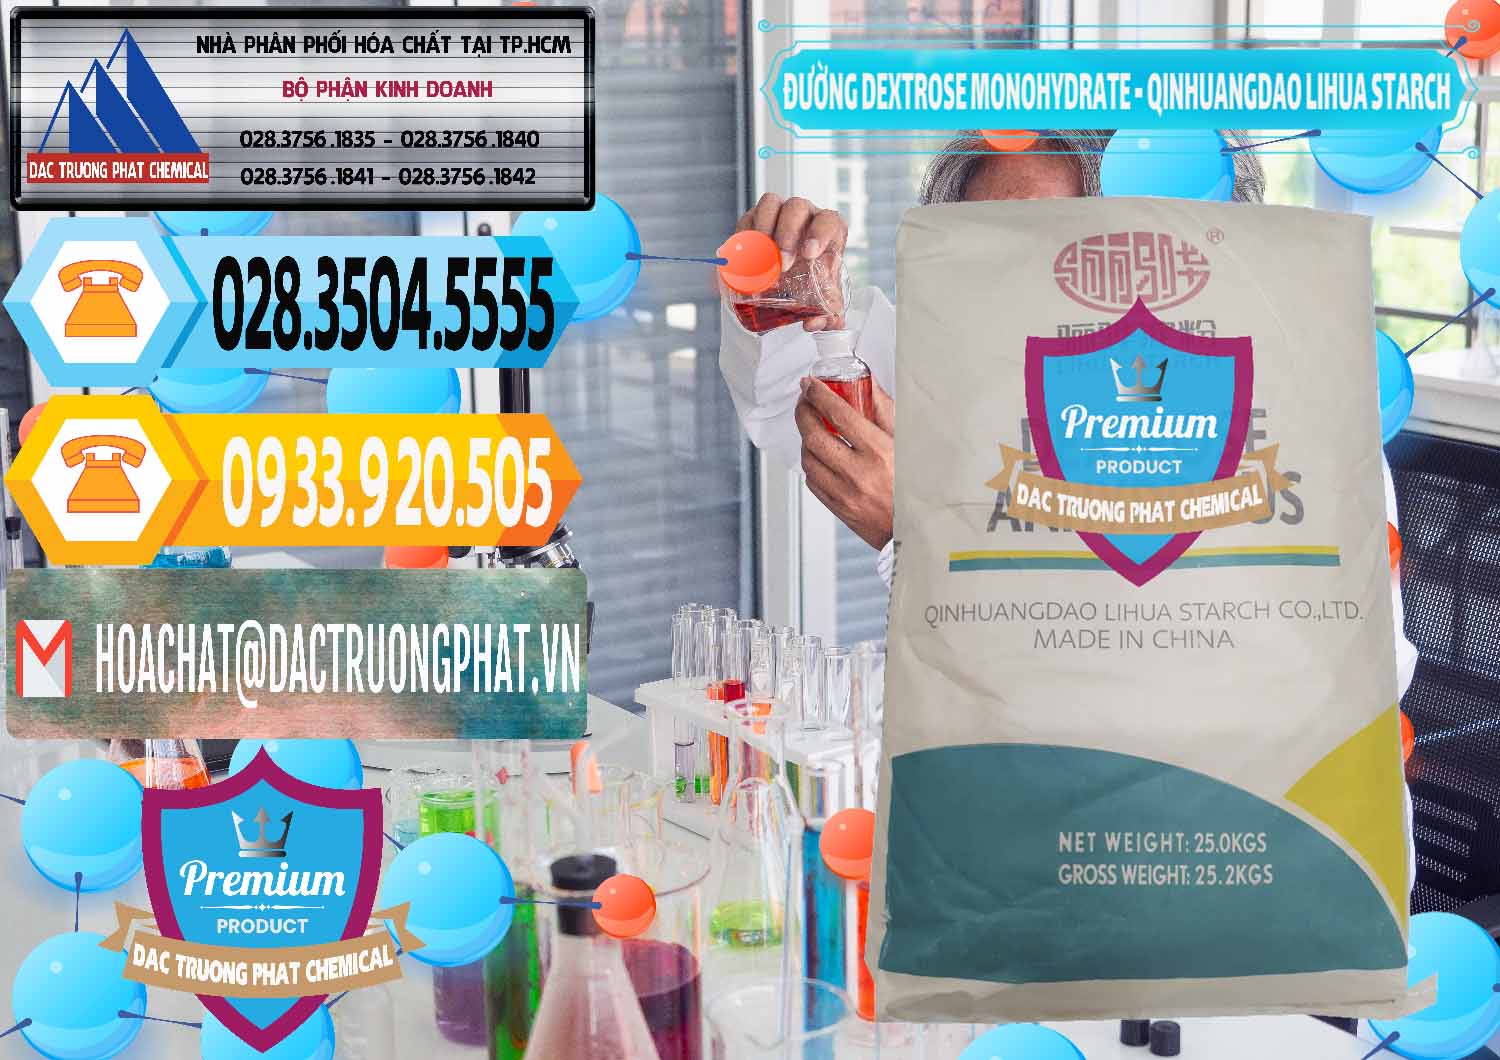 Nơi cung ứng - bán Đường Dextrose Monohydrate Food Grade Qinhuangdao Lihua Starch - 0224 - Nơi chuyên cung ứng ( phân phối ) hóa chất tại TP.HCM - hoachattayrua.net